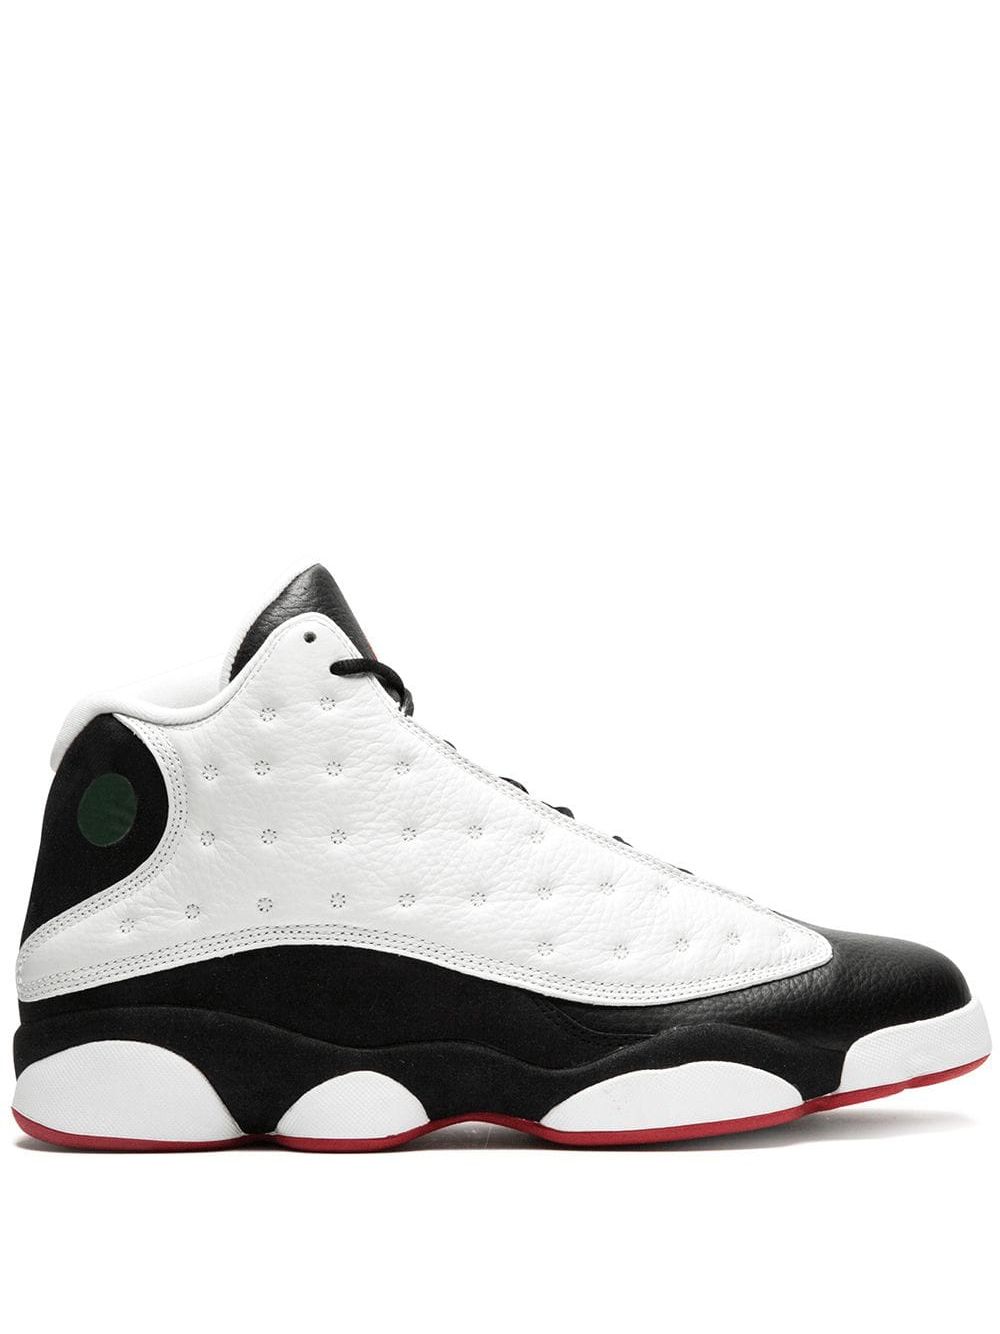 Jordan Air Jordan Retro 13 "He Got Game" sneakers - White